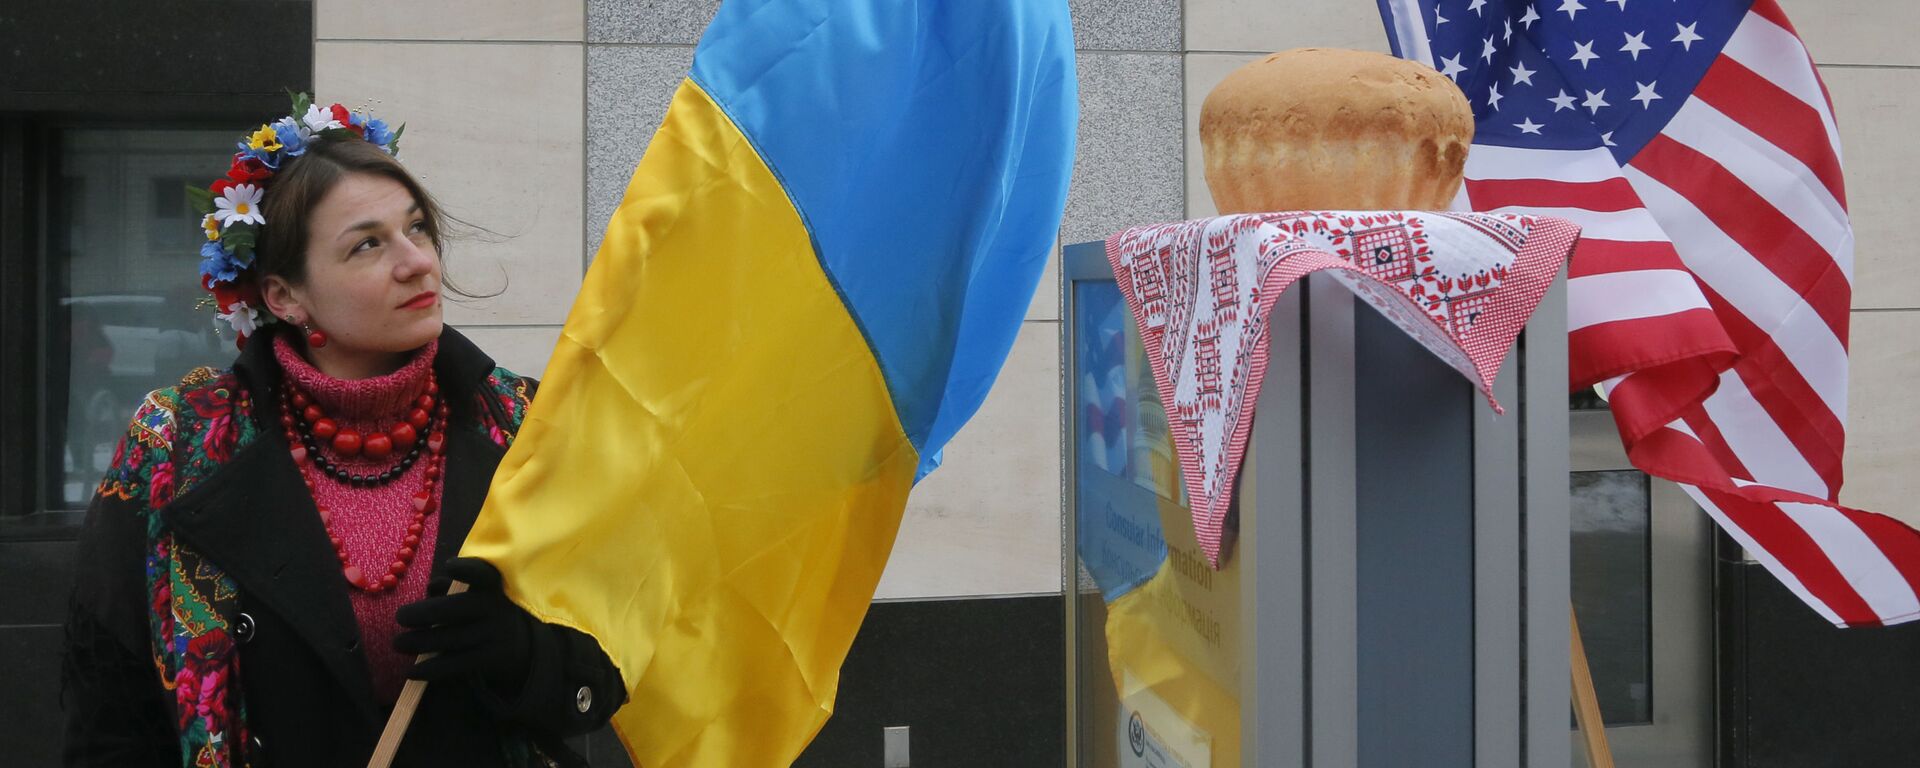 Девушка с украинским флагом у посольства США в Киеве  - Sputnik Грузия, 1920, 28.01.2022